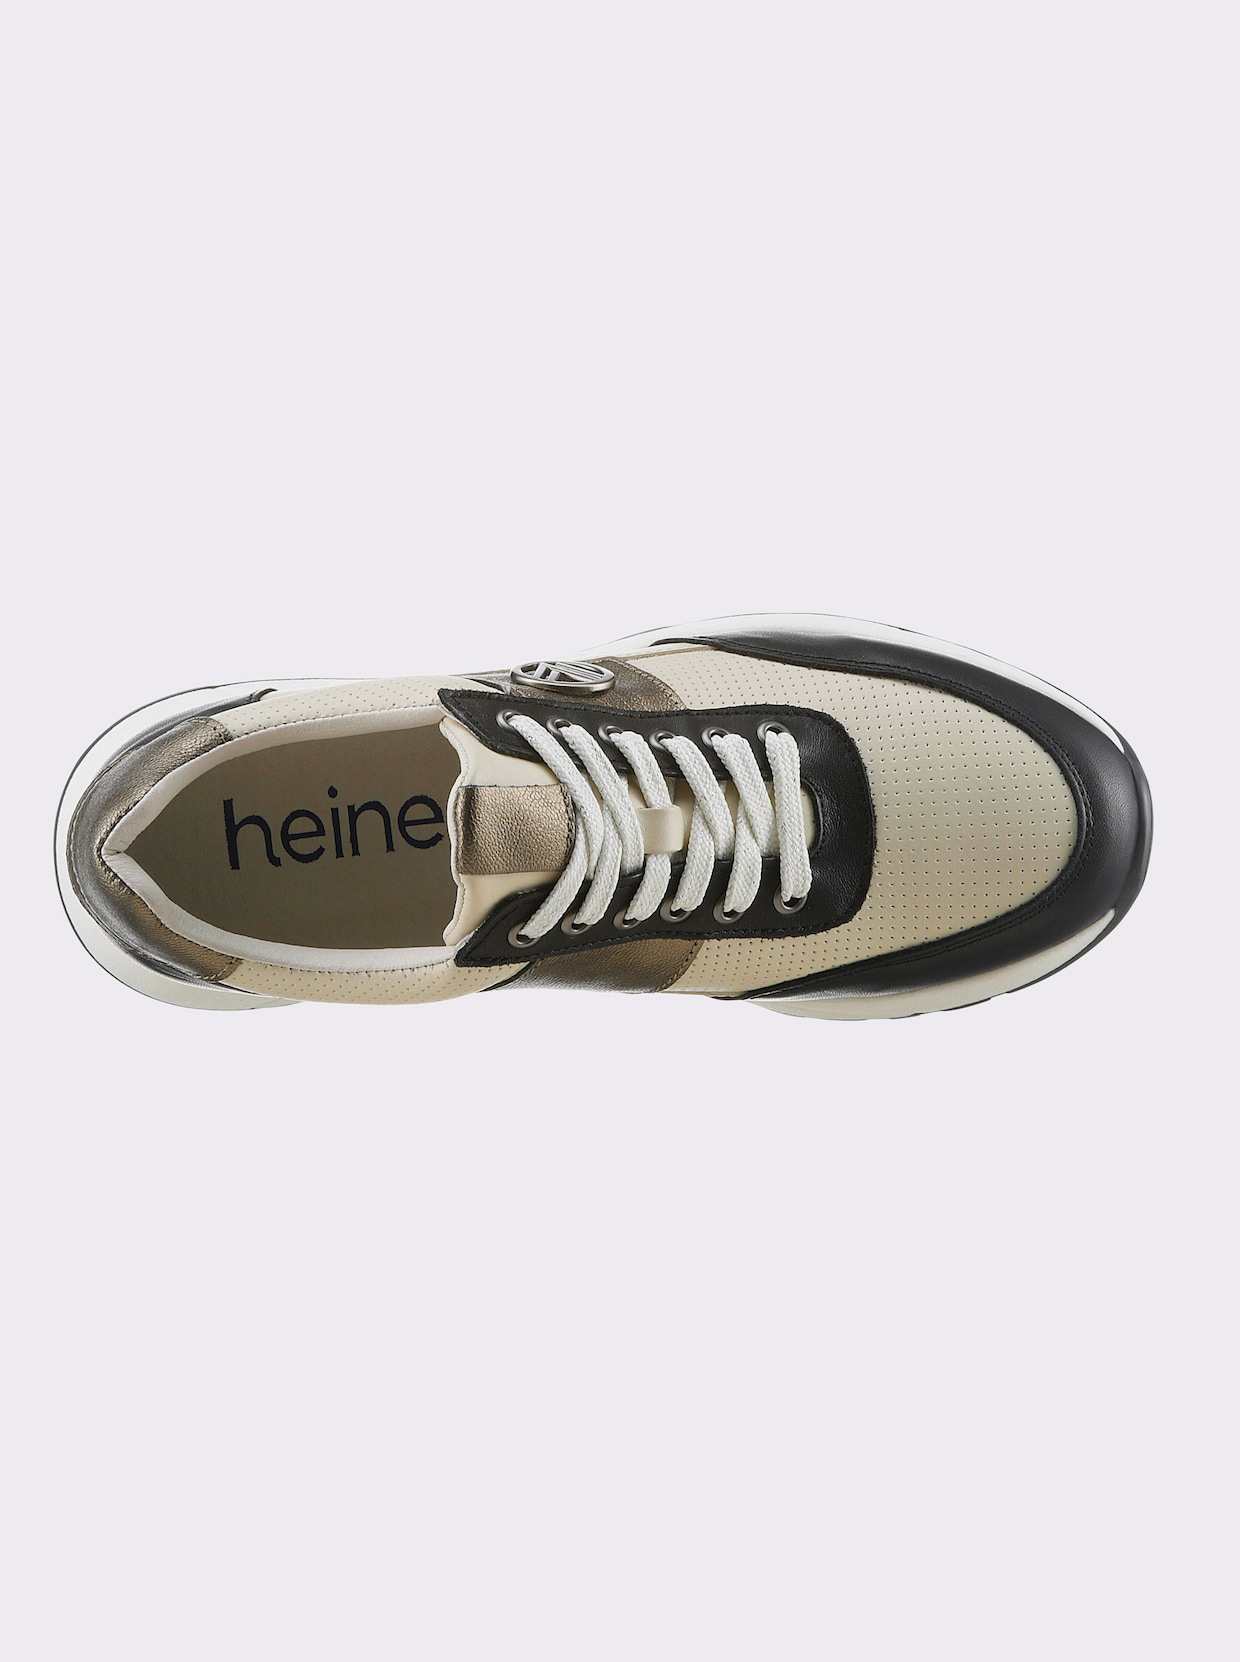 heine Sneaker - schwarz-ecru